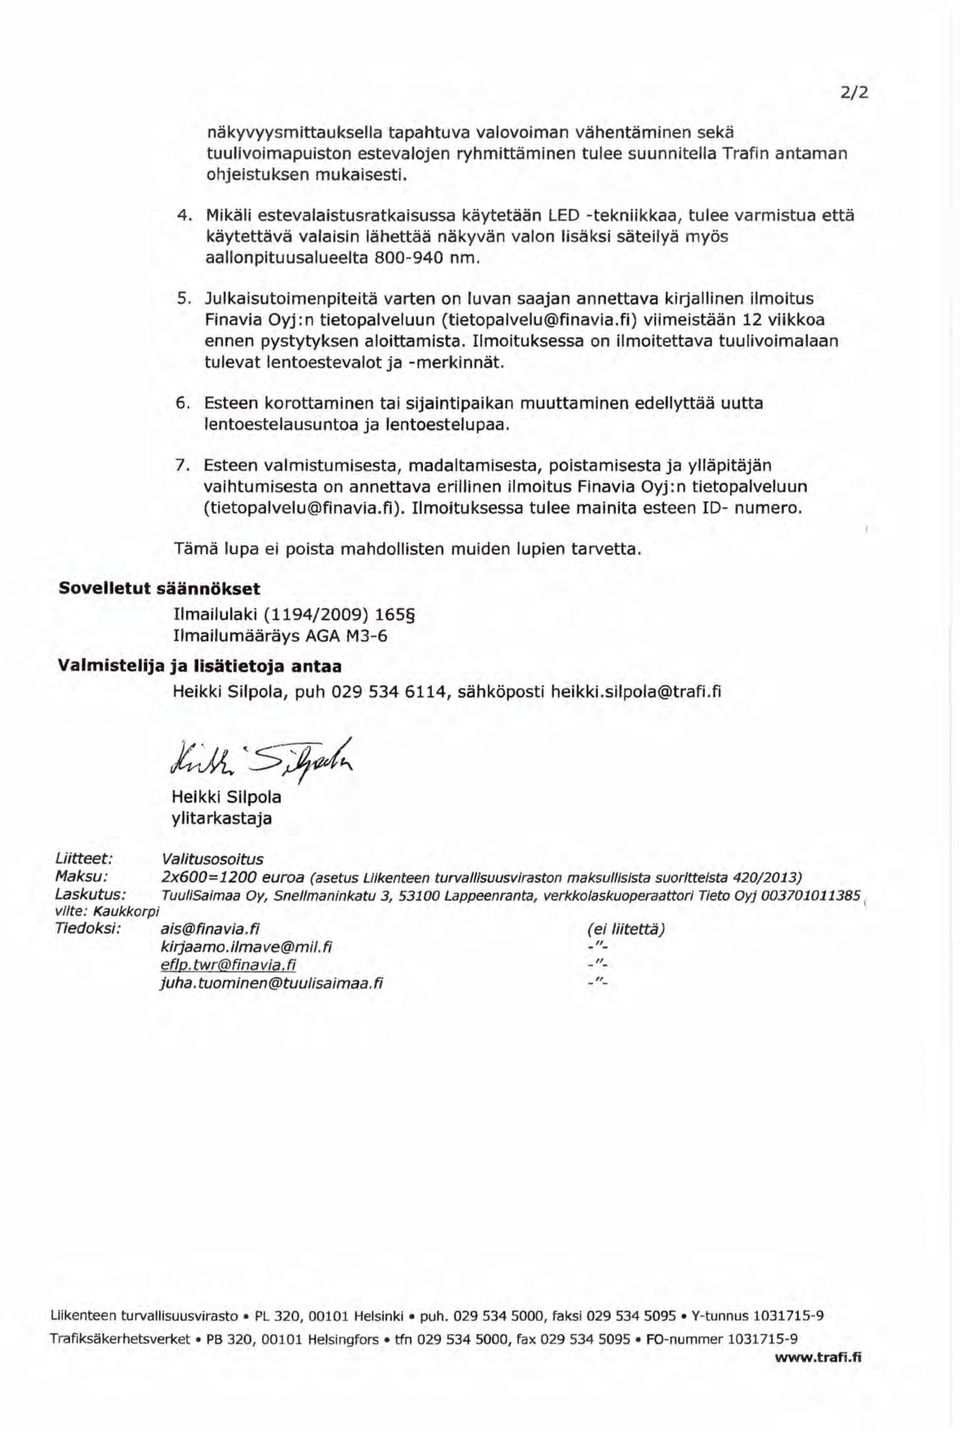 Julkaisutoimenpiteitä varten on luvan saajan annettava kirjallinen ilmoitus Finavia Oyj:n tietopalveluun (tietopalvelu@finavia.fi) viimeistään 12 viikkoa ennen pystytyksen aloittamista.